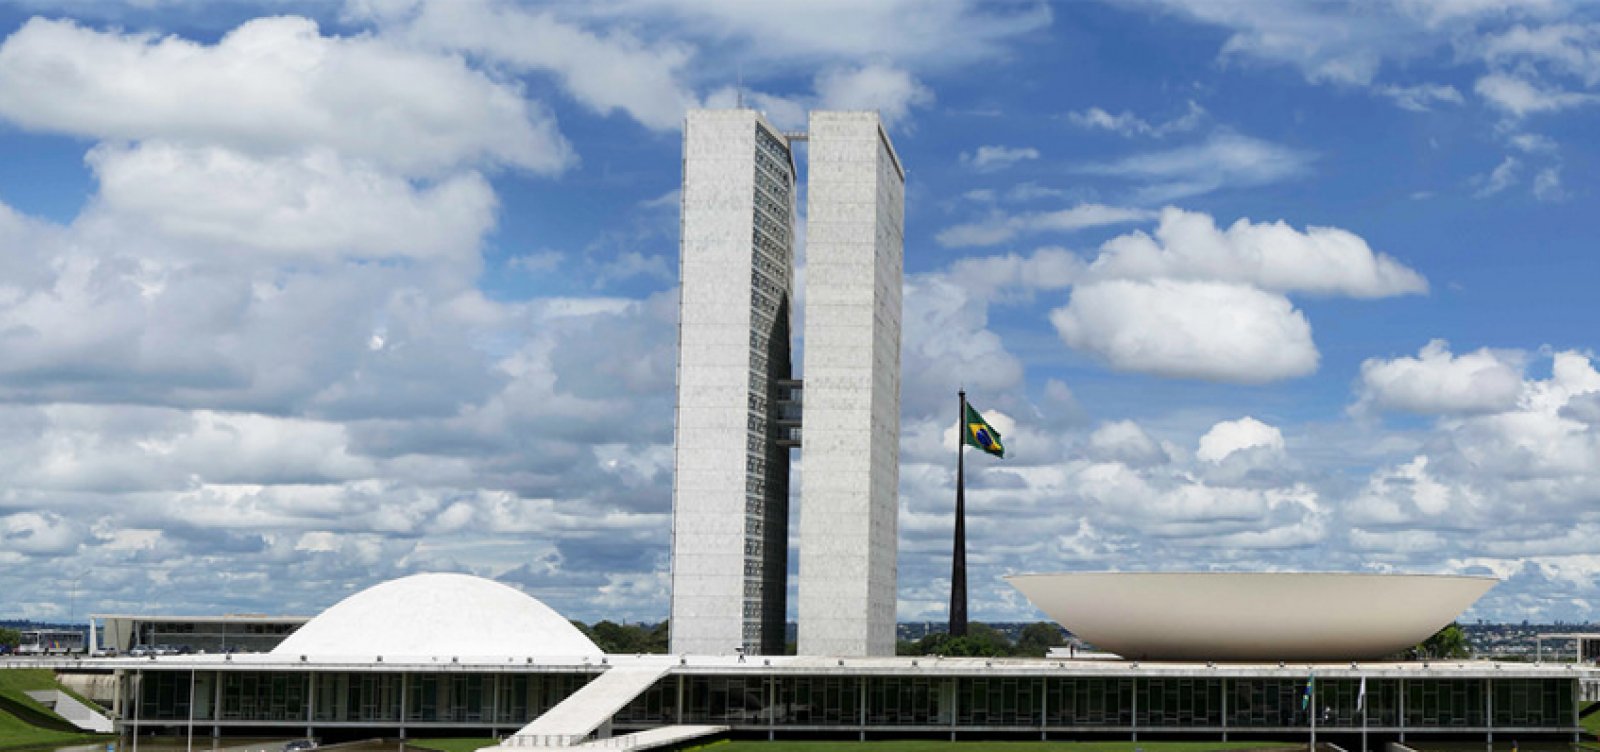 Ministros do STF e políticos minimizam atos pró-Bolsonaro